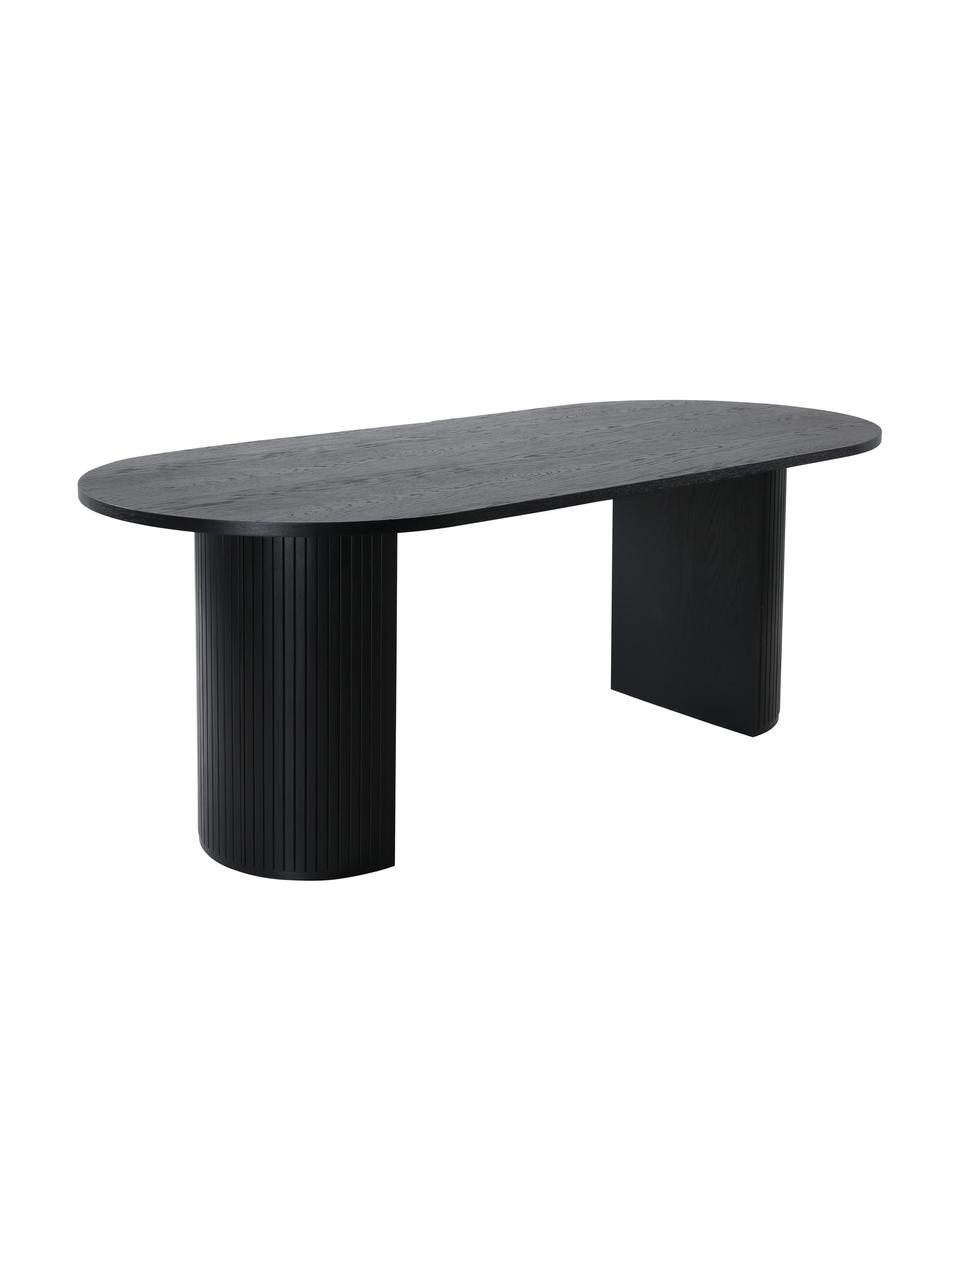 Oválný jídelní stůl s dubovou dýhou Bianca, 200 x 90 cm, Dubové dřevo, černě lakované, Š 200 cm, H 90 cm